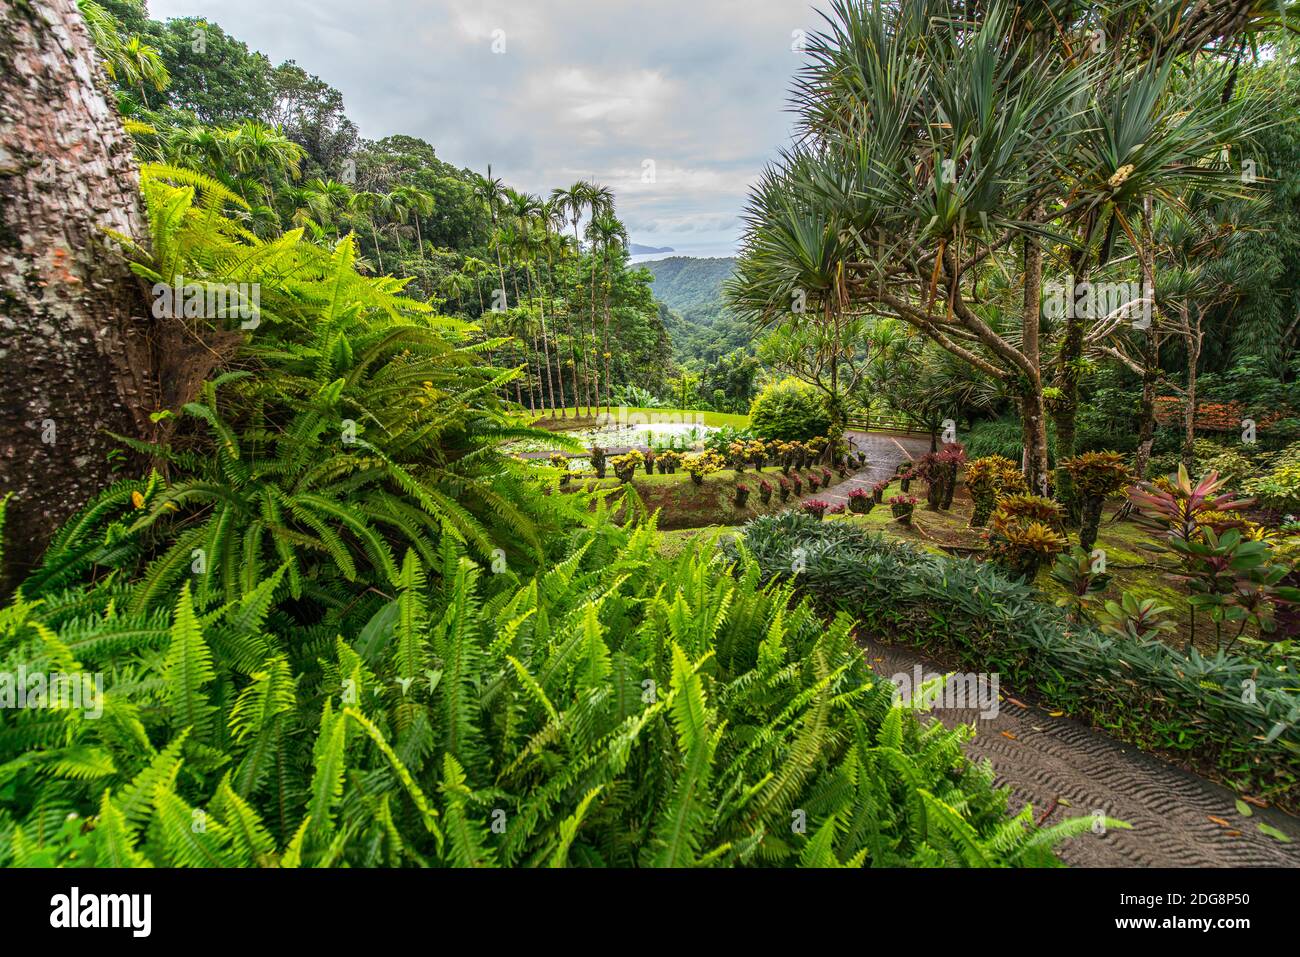 Jardin botanique de Balata, Martinique, France Banque D'Images